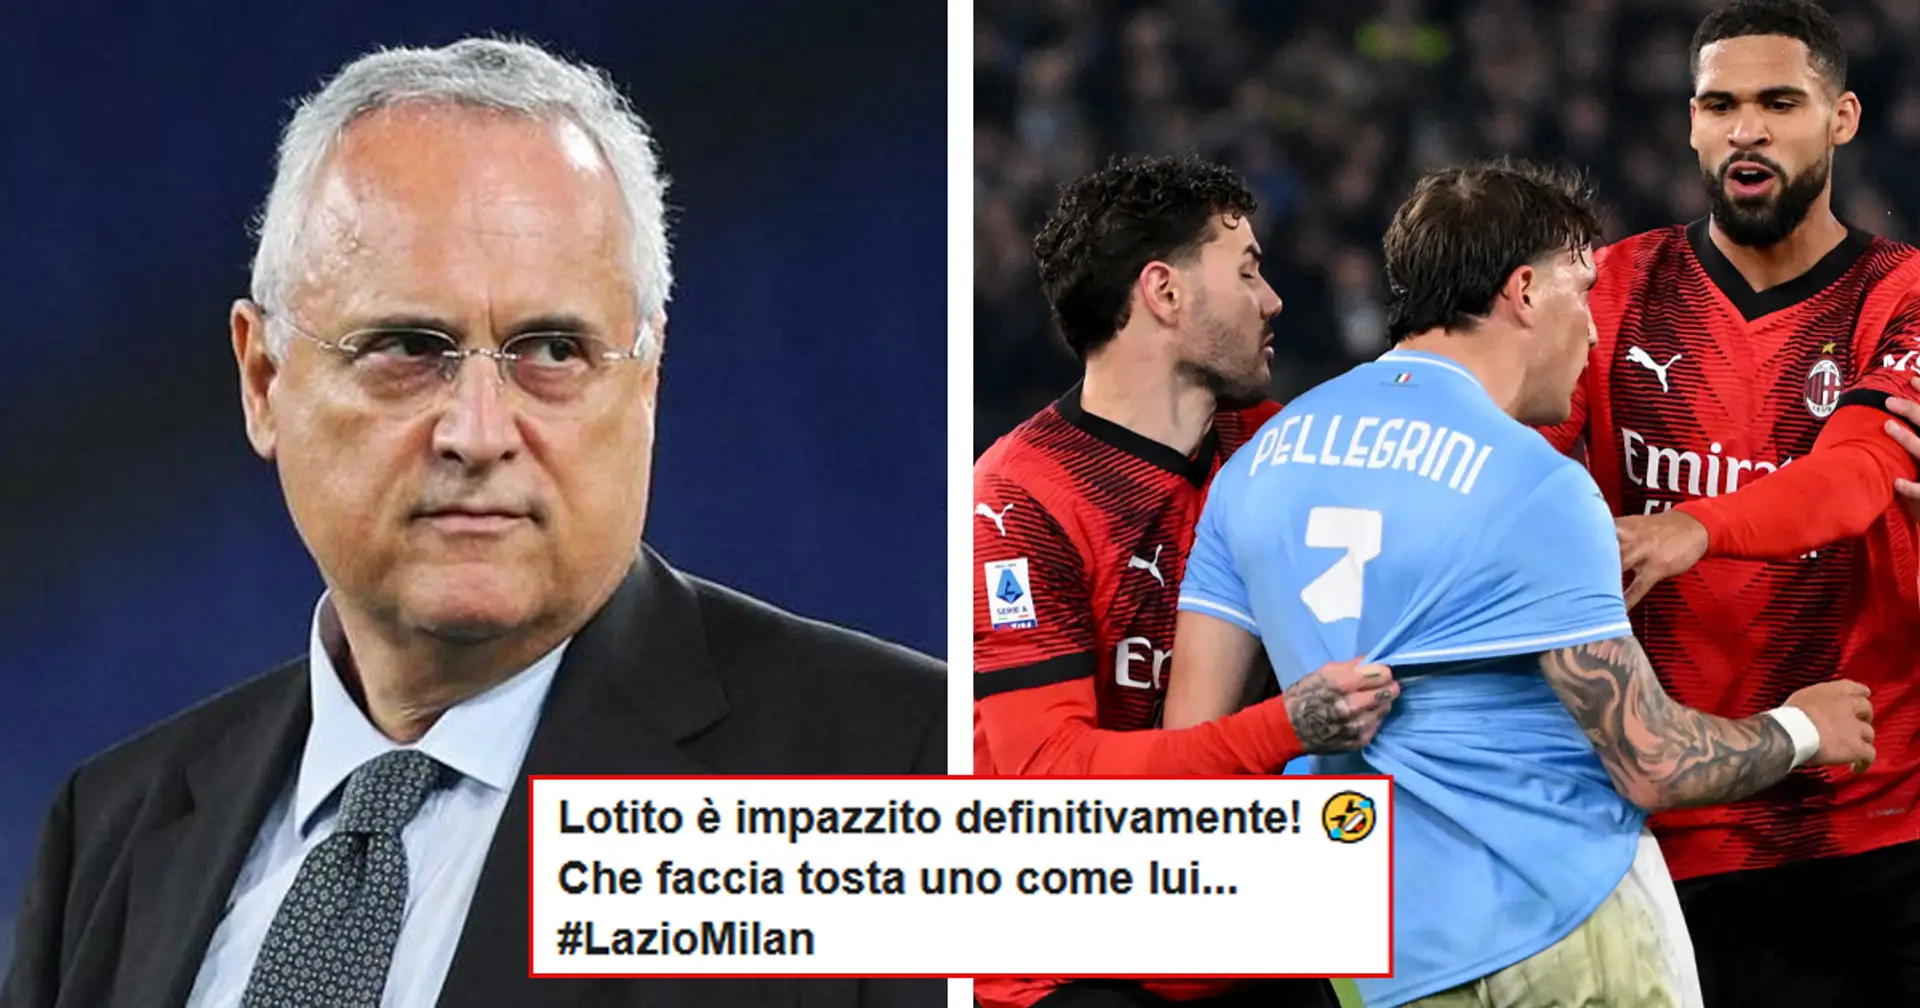 Lotito vuole rigiocare Lazio-Milan e scomoda anche il Parlamento, i tifosi rossoneri rispondono: "È impazzito?!"